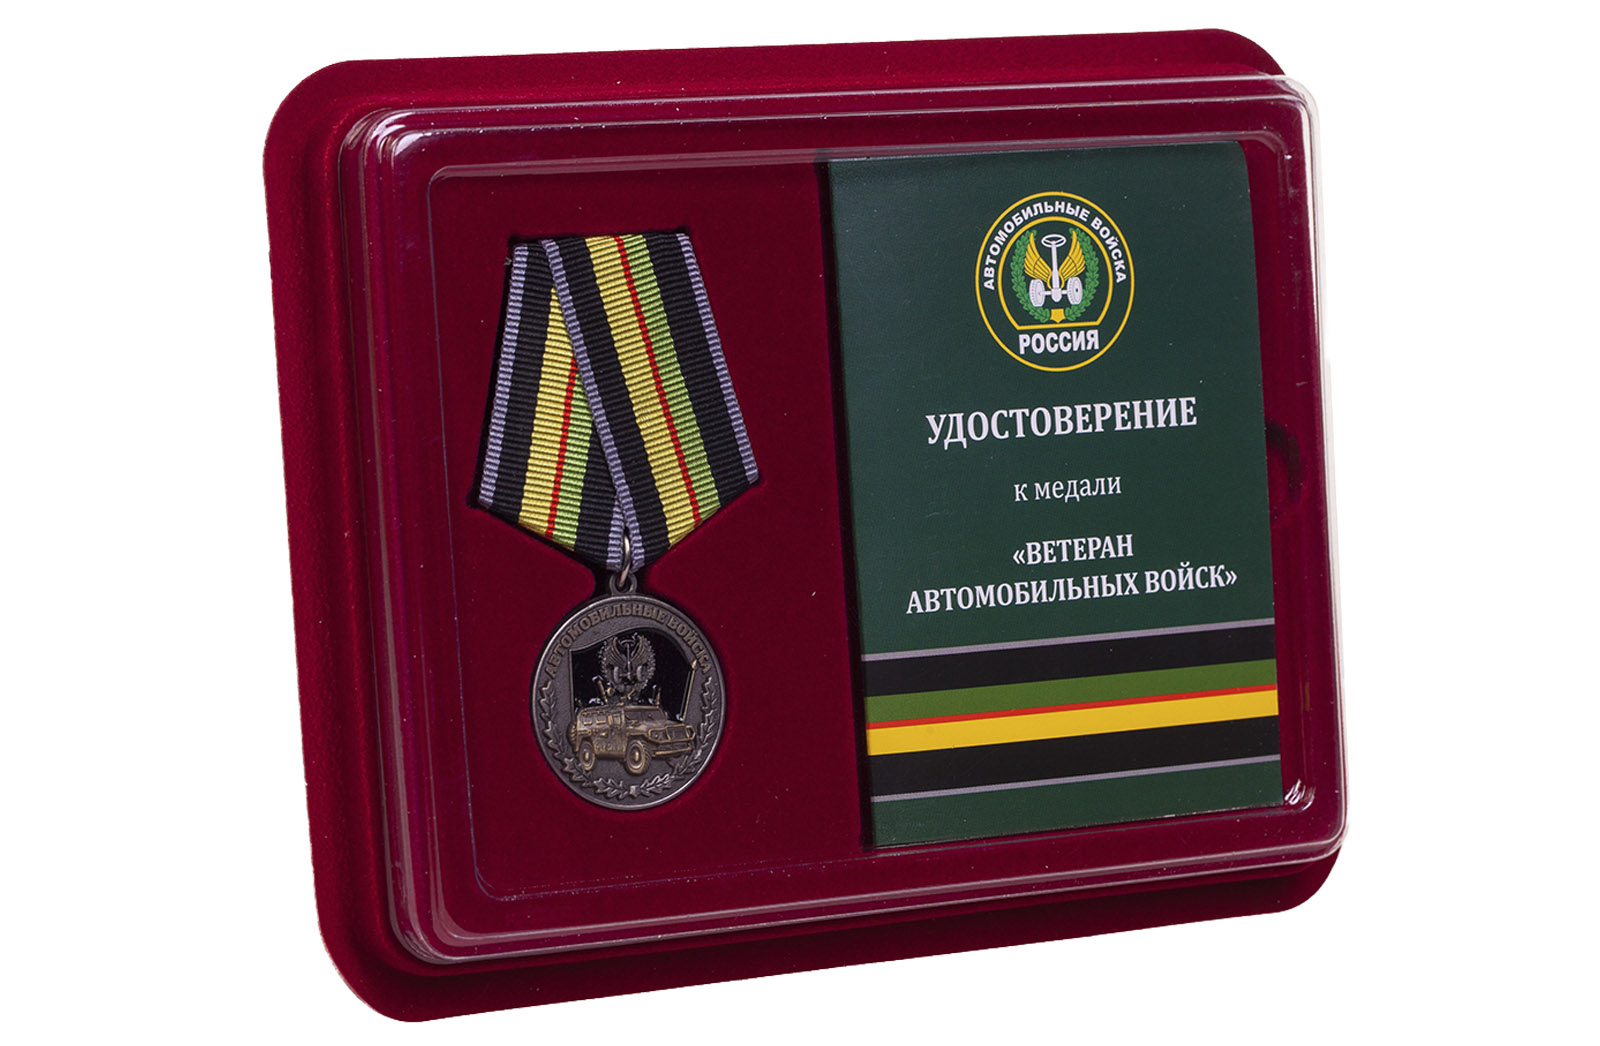 Купить памятную медаль Ветеран автомобильных войск оптом выгодно